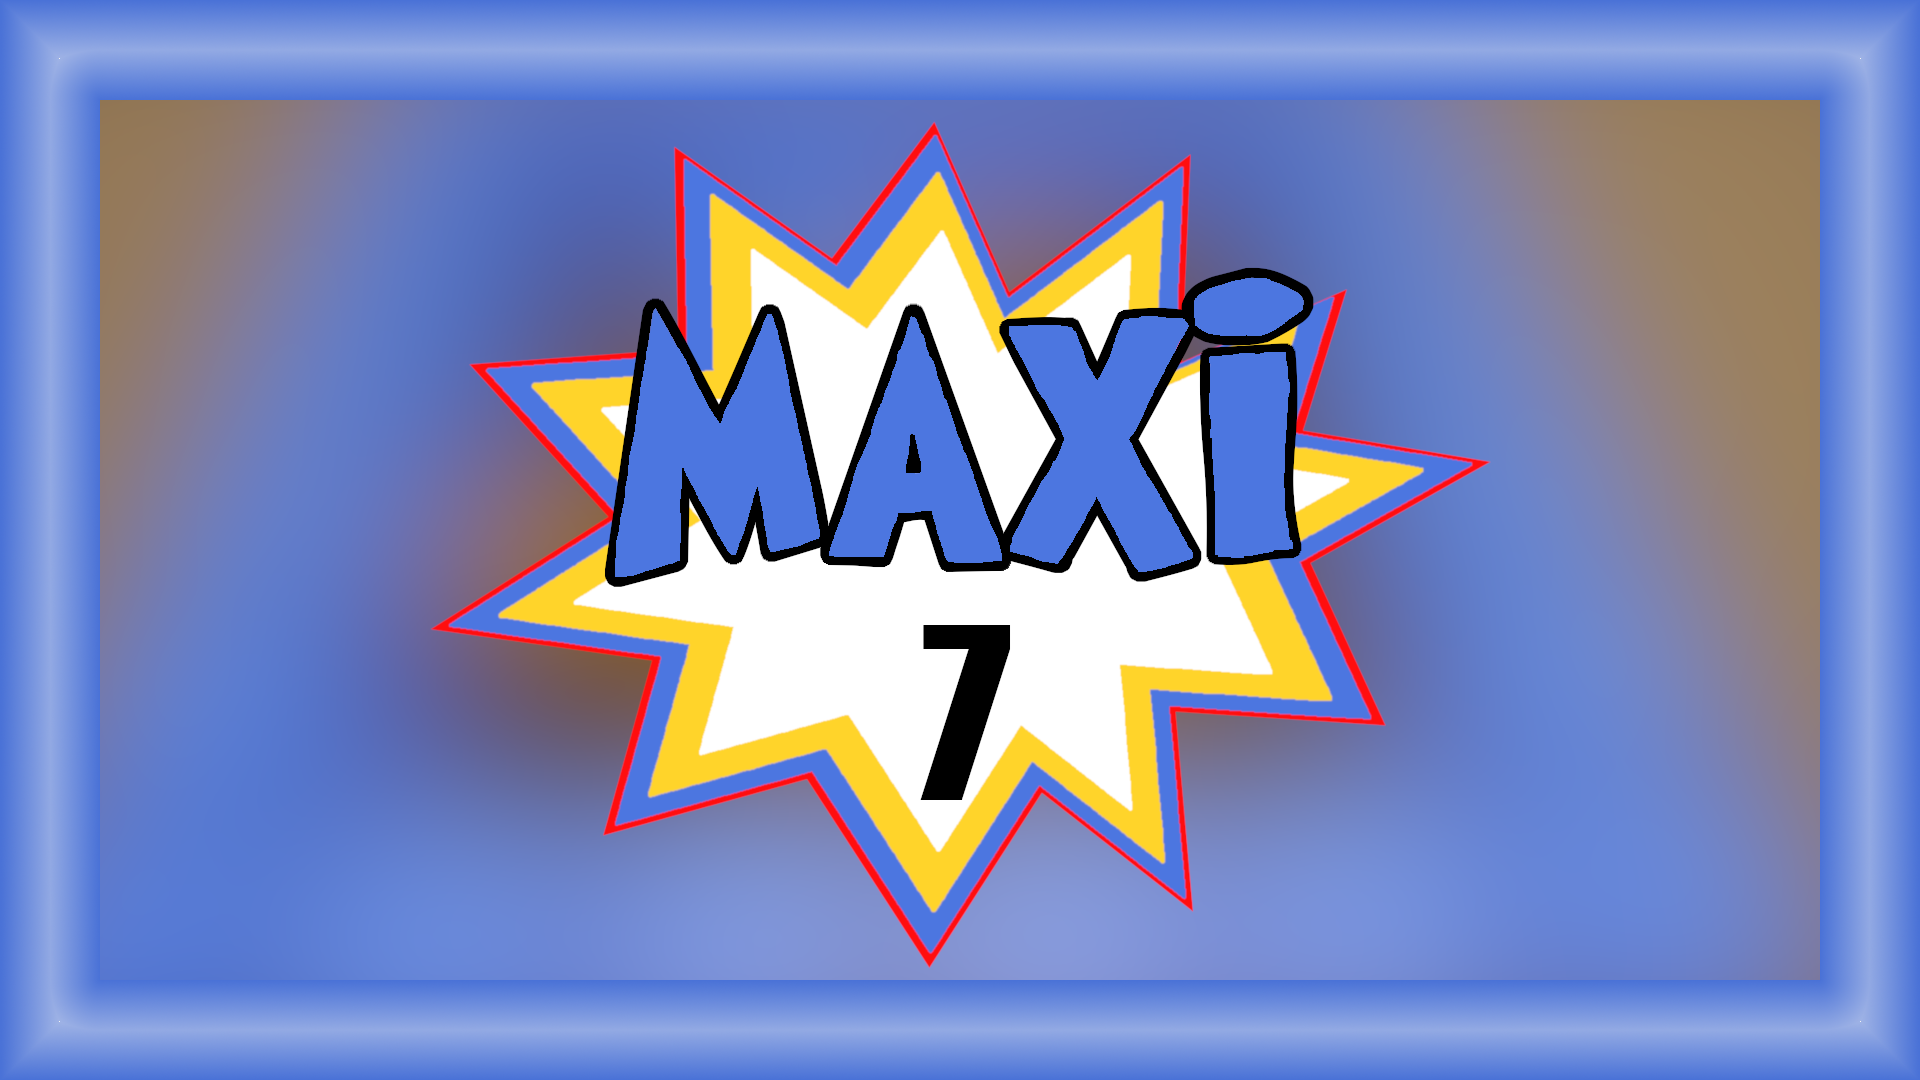 Maxi 7